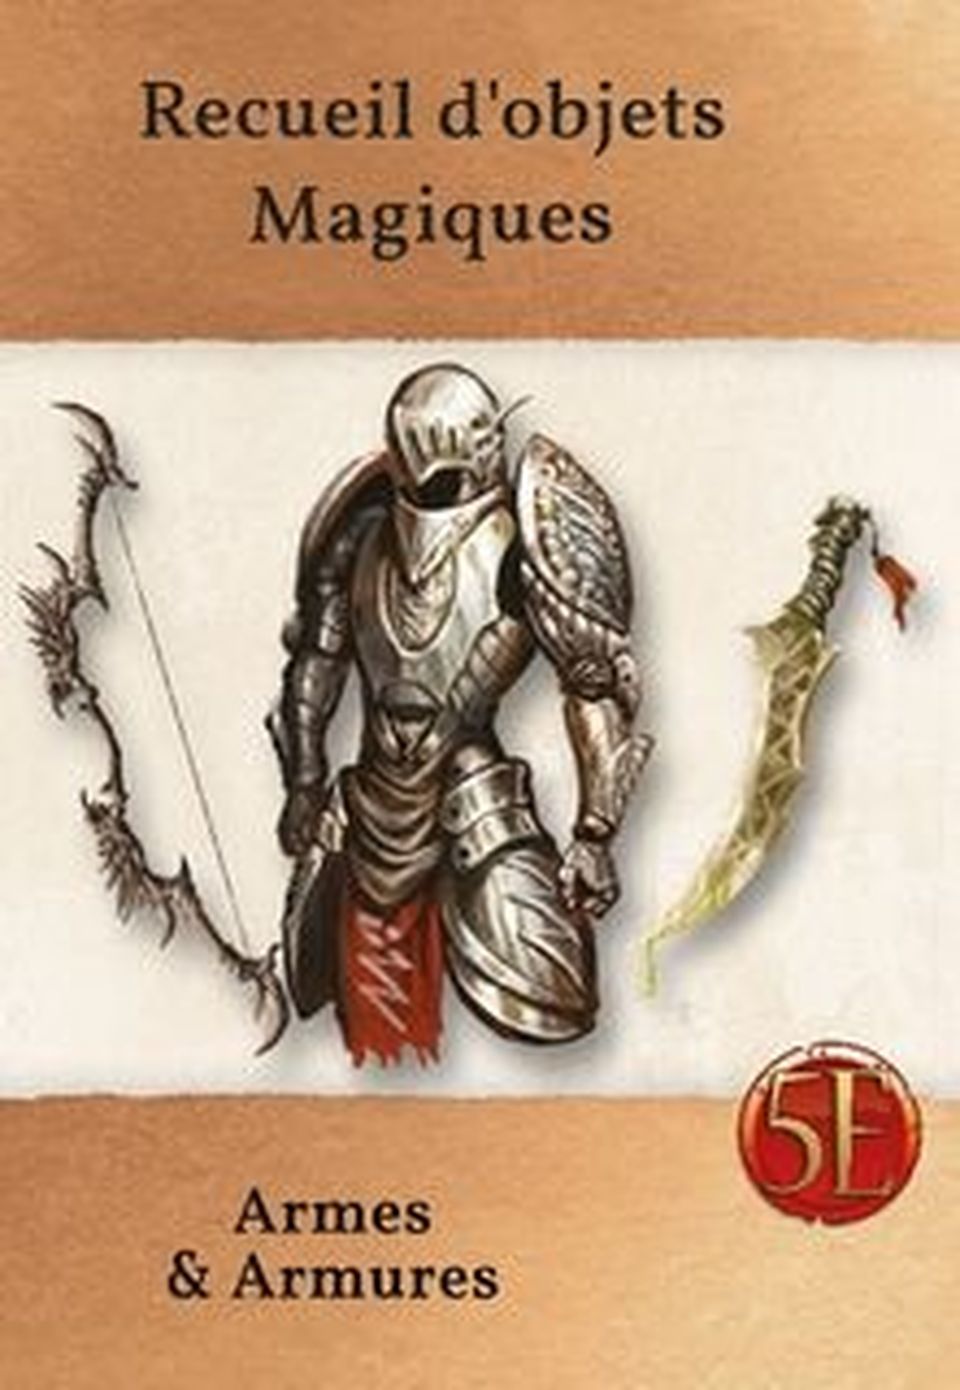 Recueil d'objets magiques : Armes et armures image